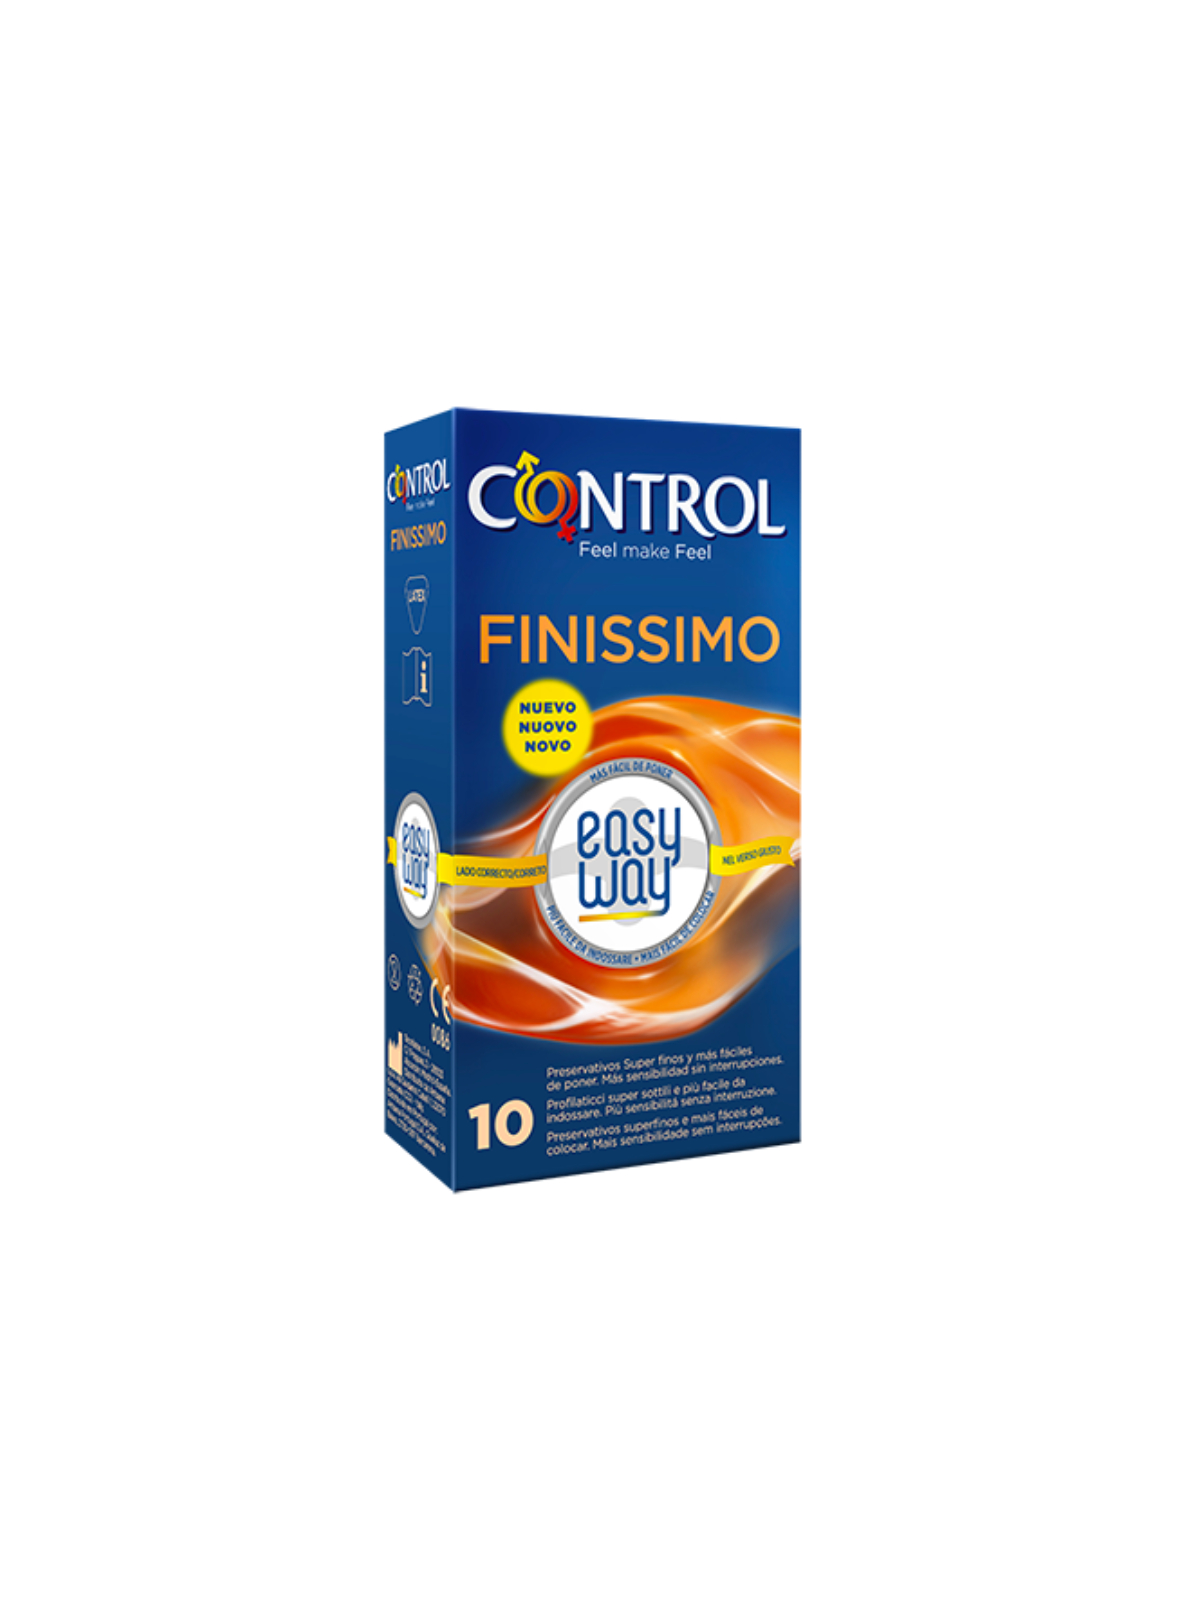 Control Adapta Easy Way Finissimo 10 Units - Comprar Condones extra finos Control - Preservativos extra finos (1)